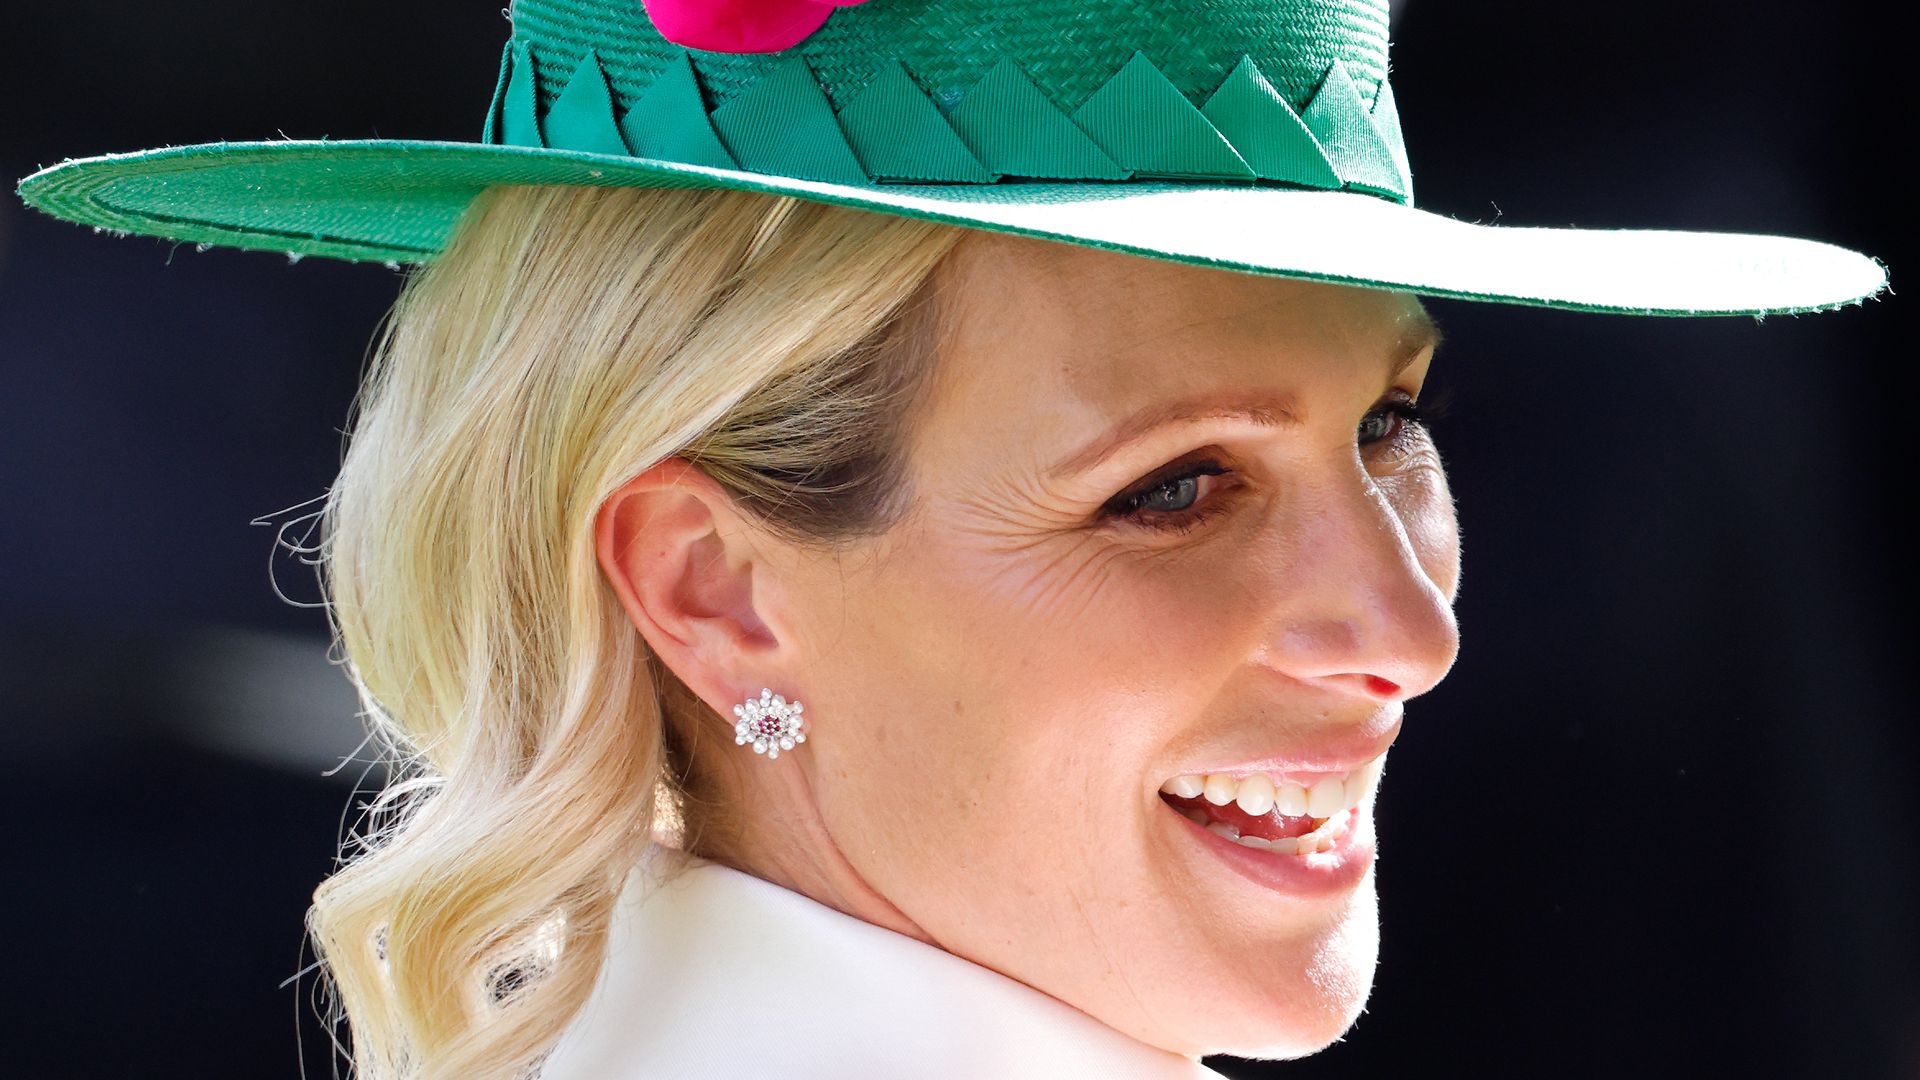 Zara Tindall smiling at Royal Ascot wearing a green and pink hat